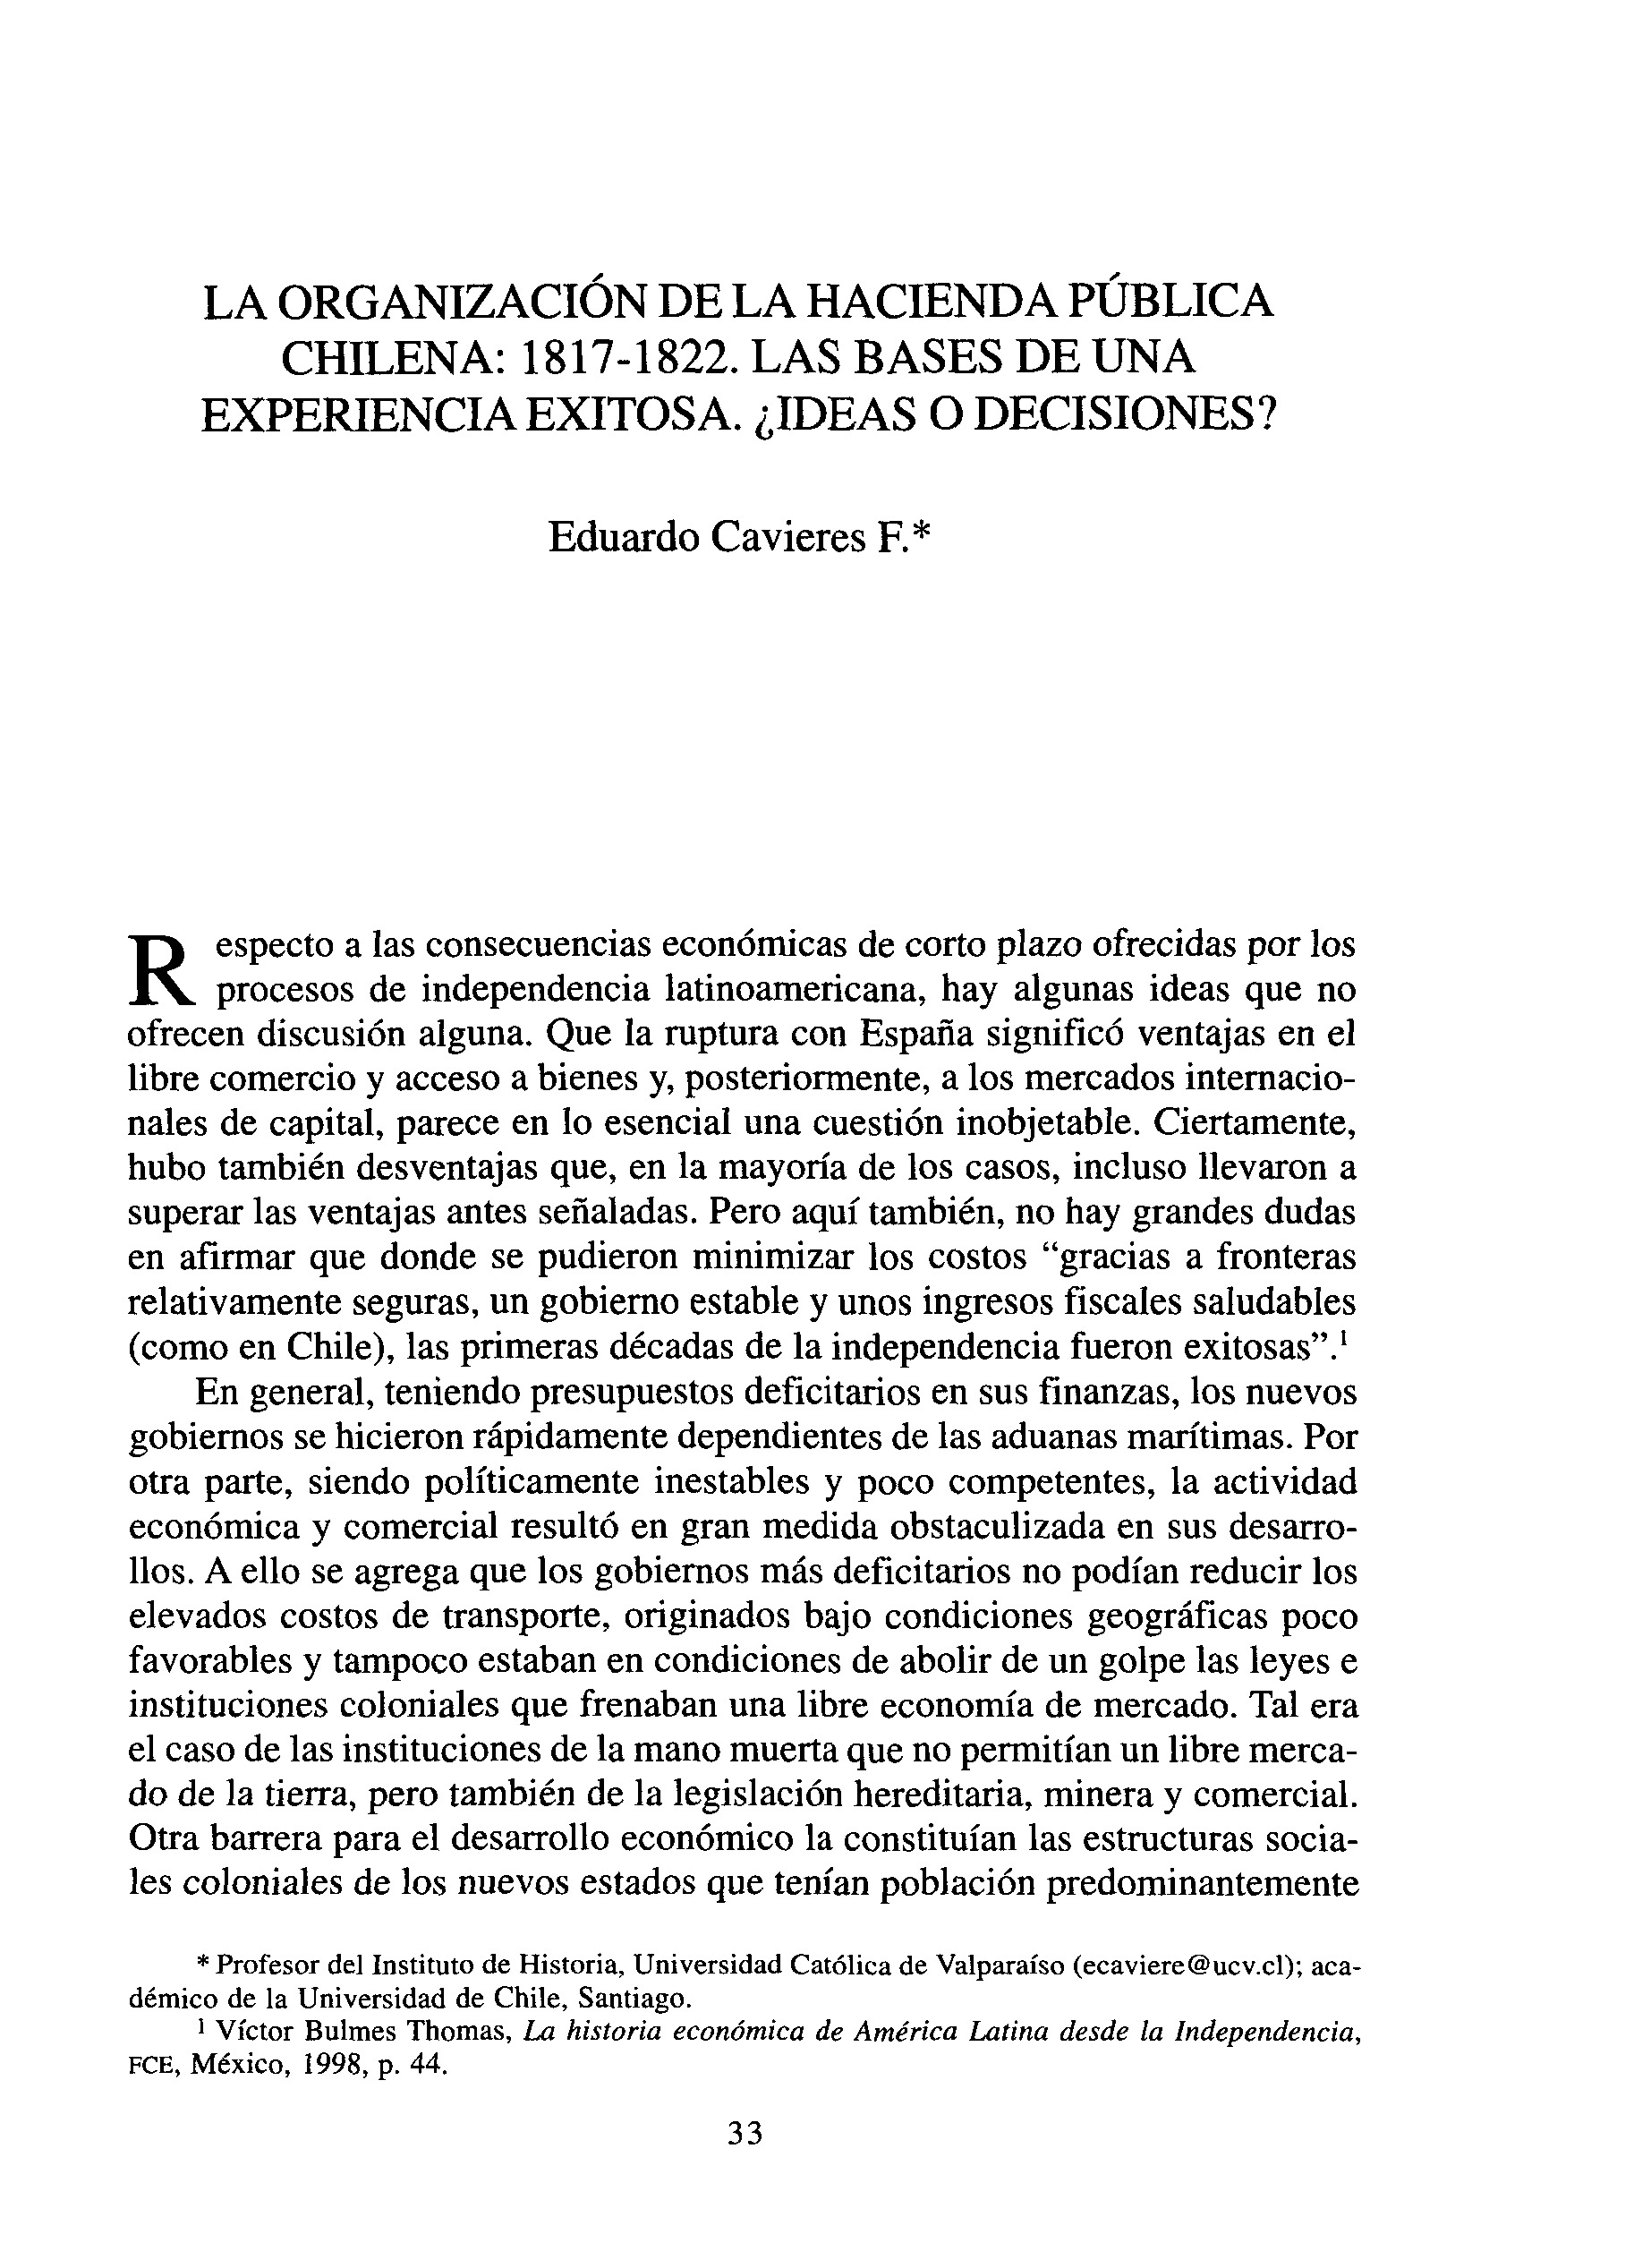 La organización de la Hacienda pública chilena: 1817-1822. Las bases de una experiencia exitosa. ¿Ideas o decisiones?